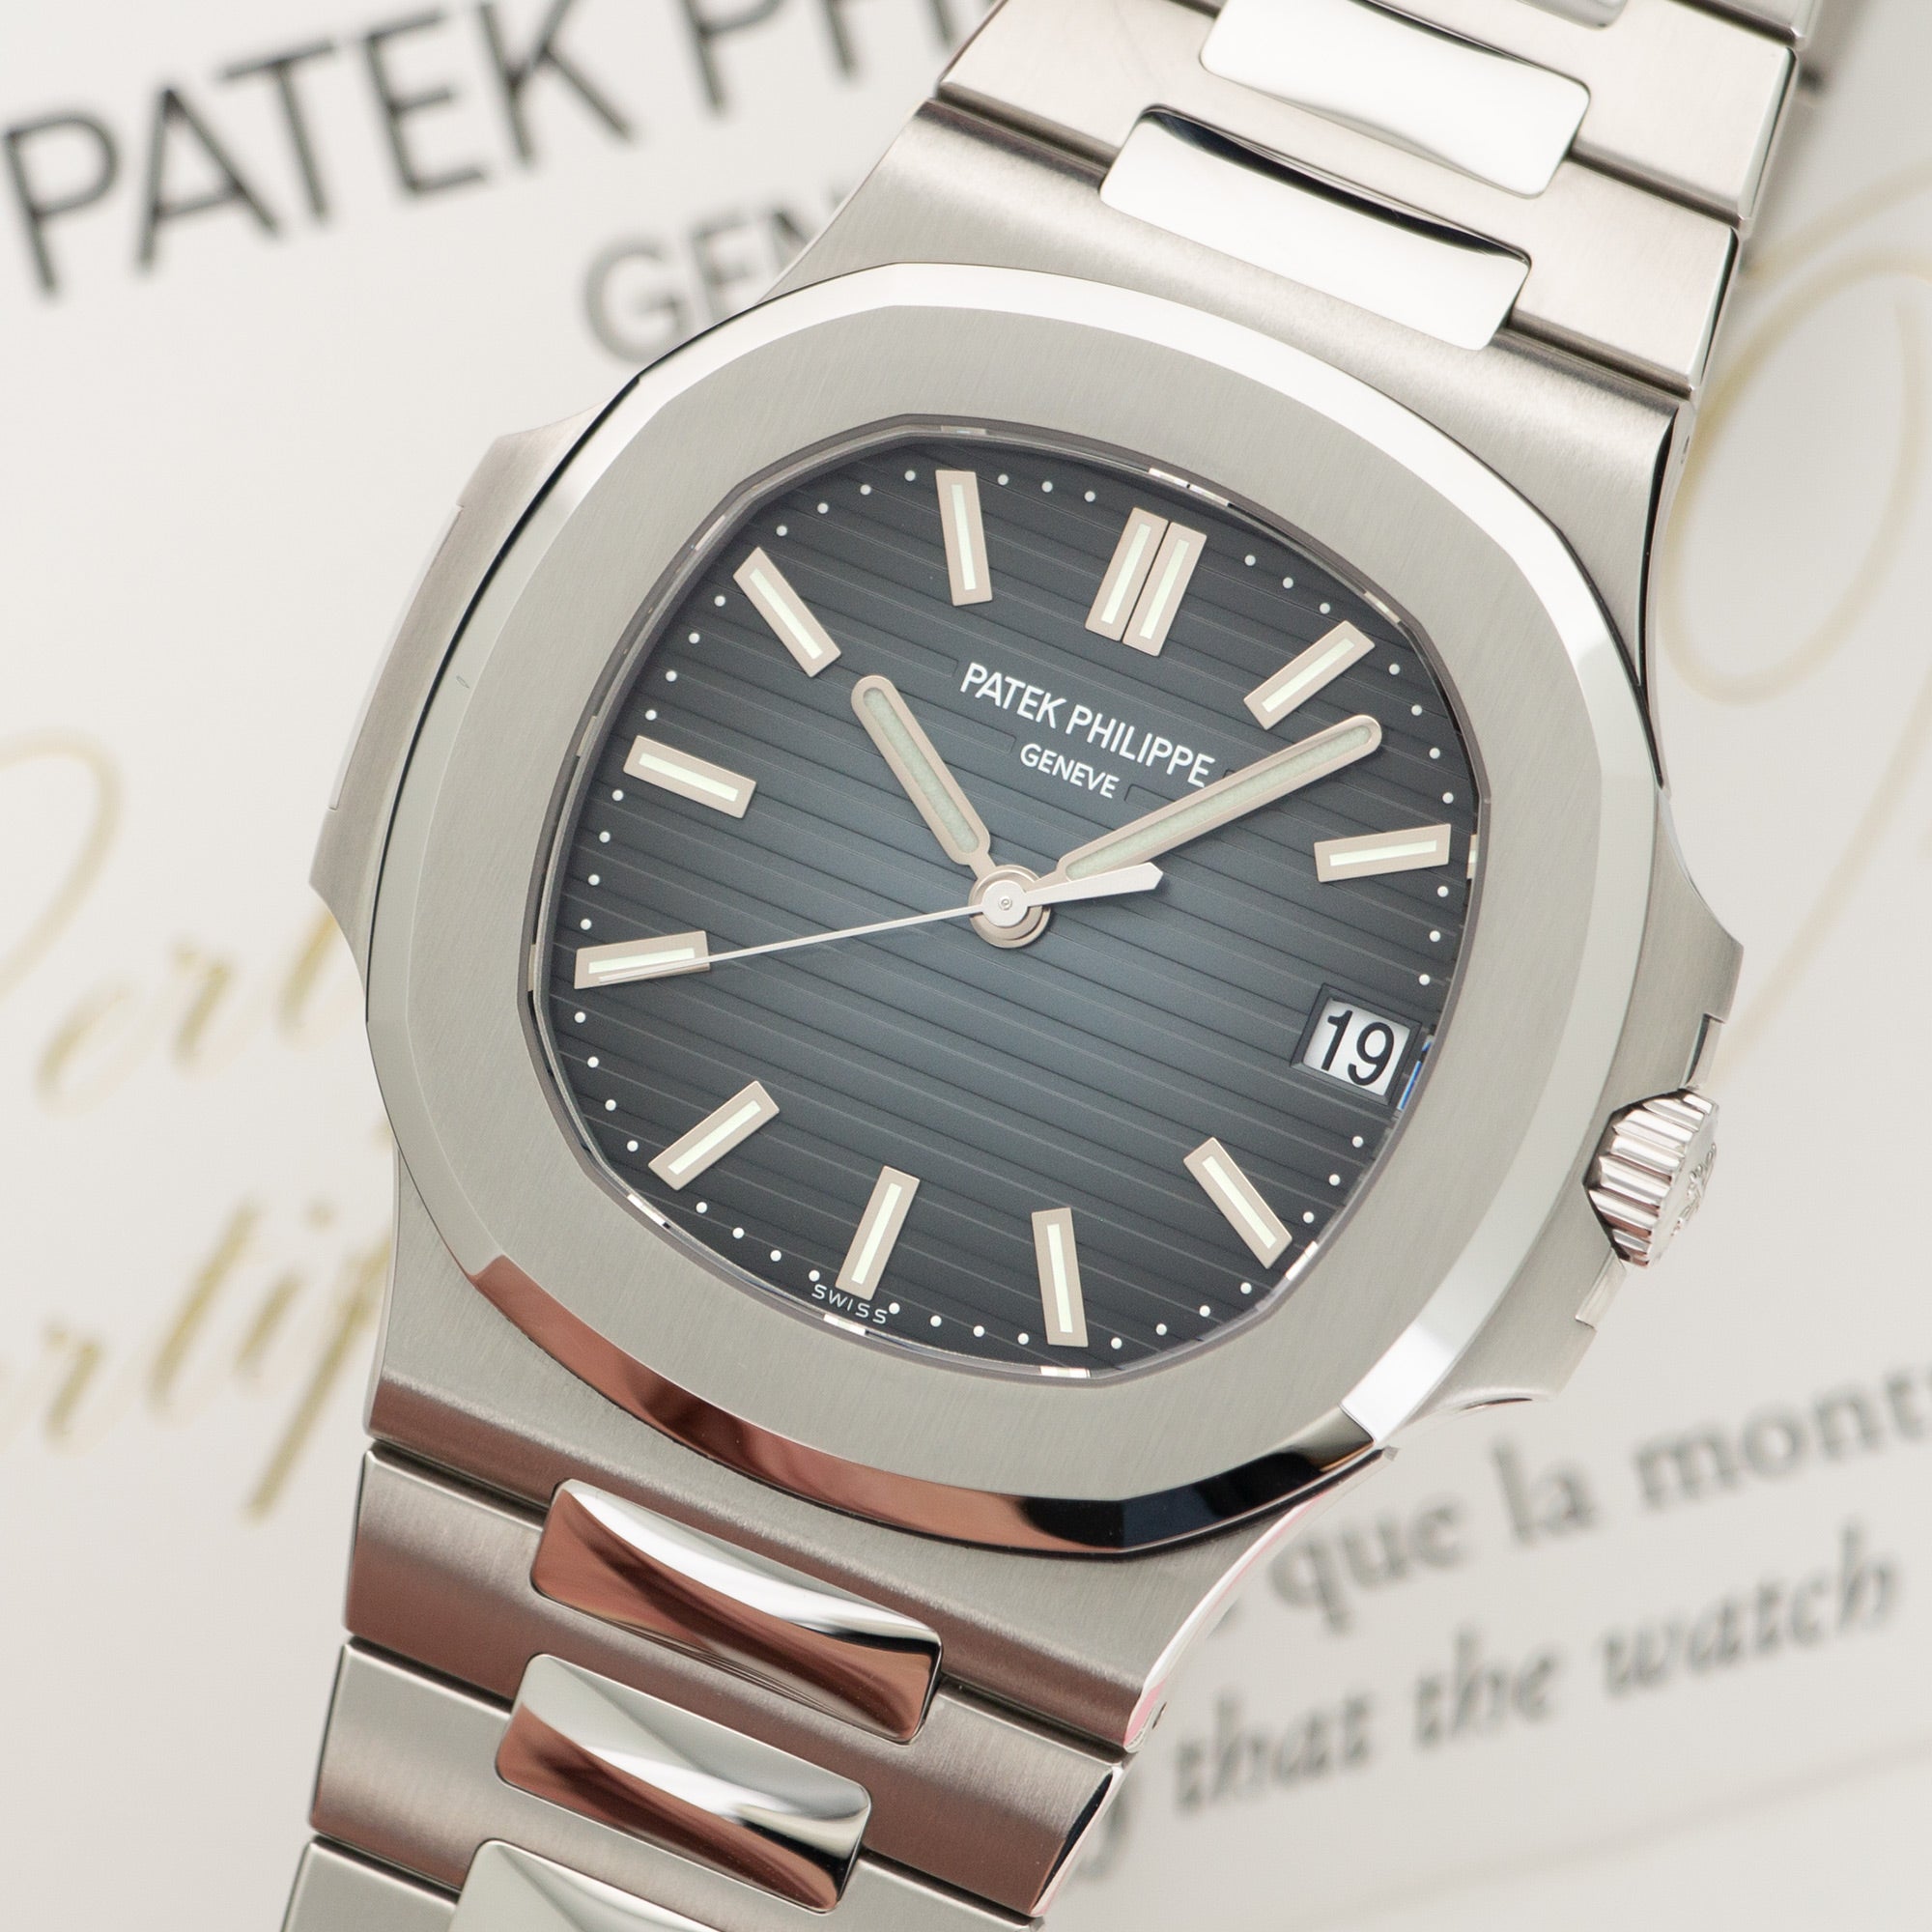 Patek Philippe - Patek Philippe Nautilus Jumbo Watch Ref. 5711 - The Keystone Watches